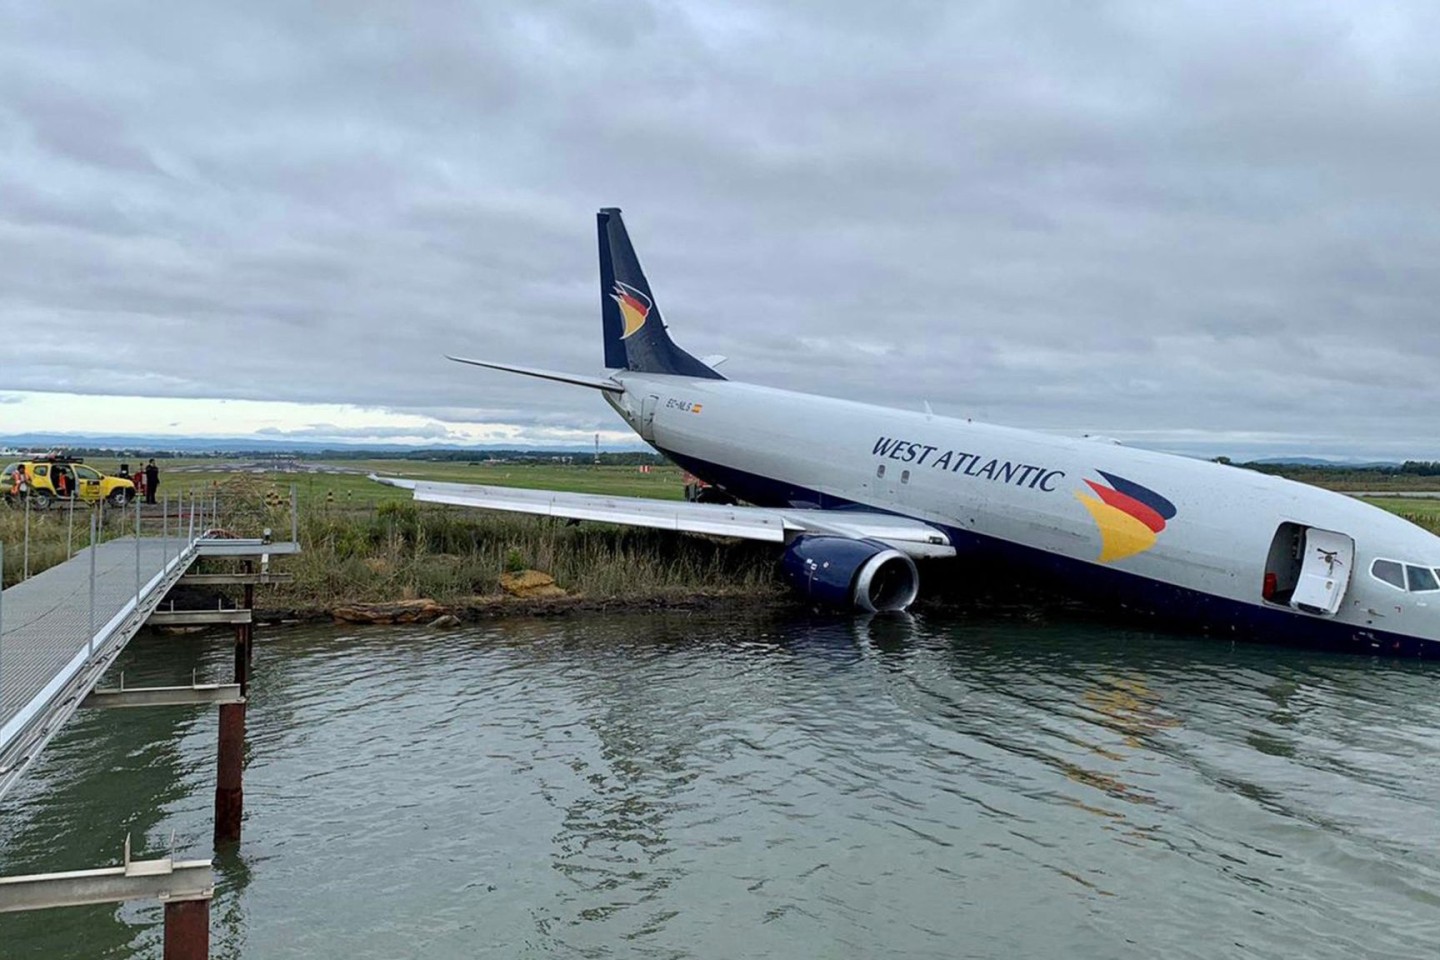 Der Flieger der West Atlantic Airline ist bei der nächtlichen Landung über die Landebahn hinausgeschossen.